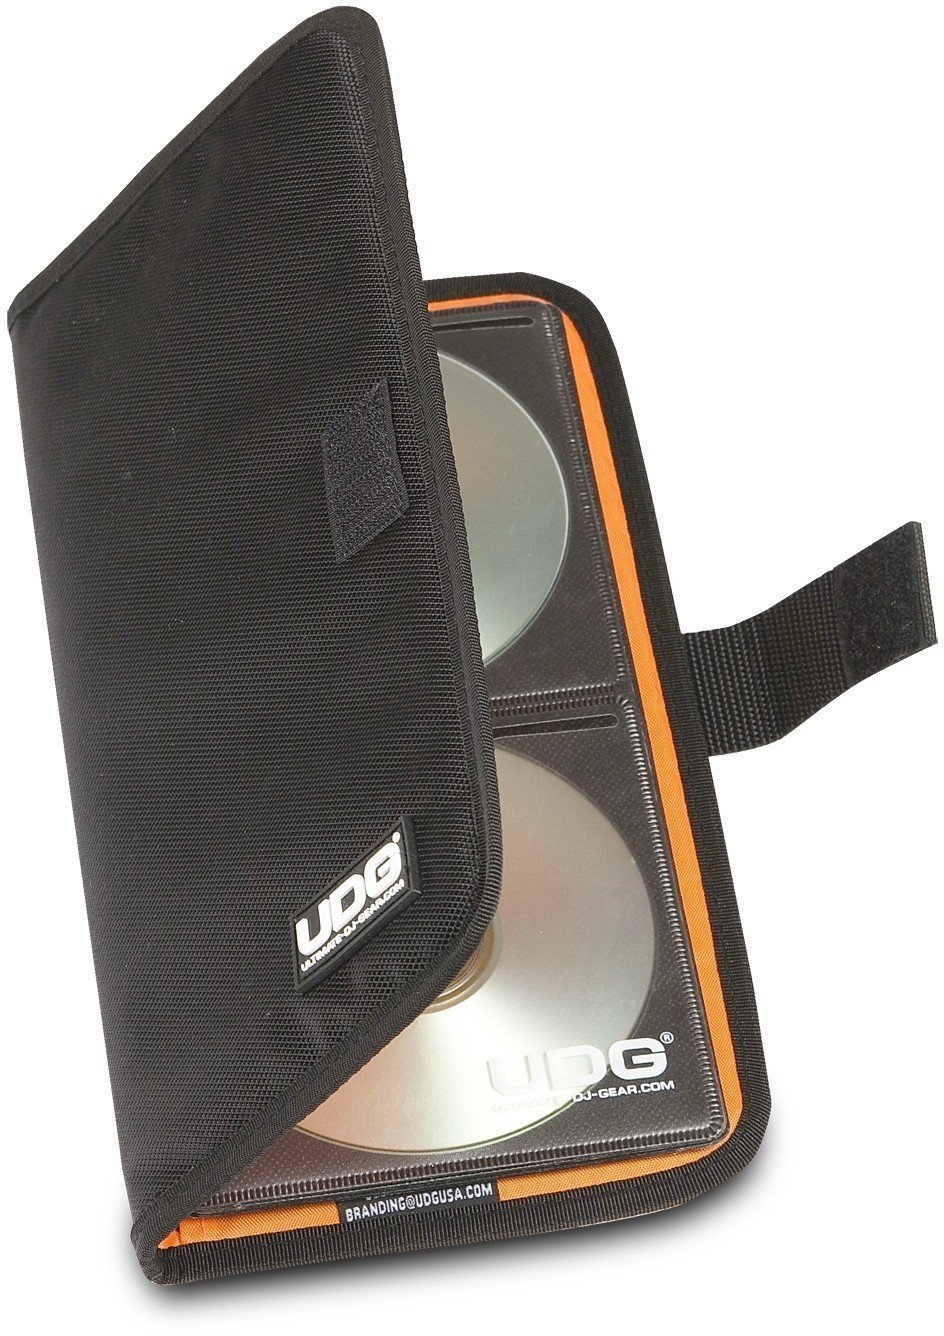 Barn doors per luci UDG Ultimate CD Wallet 24 Digital Black/Orange inside